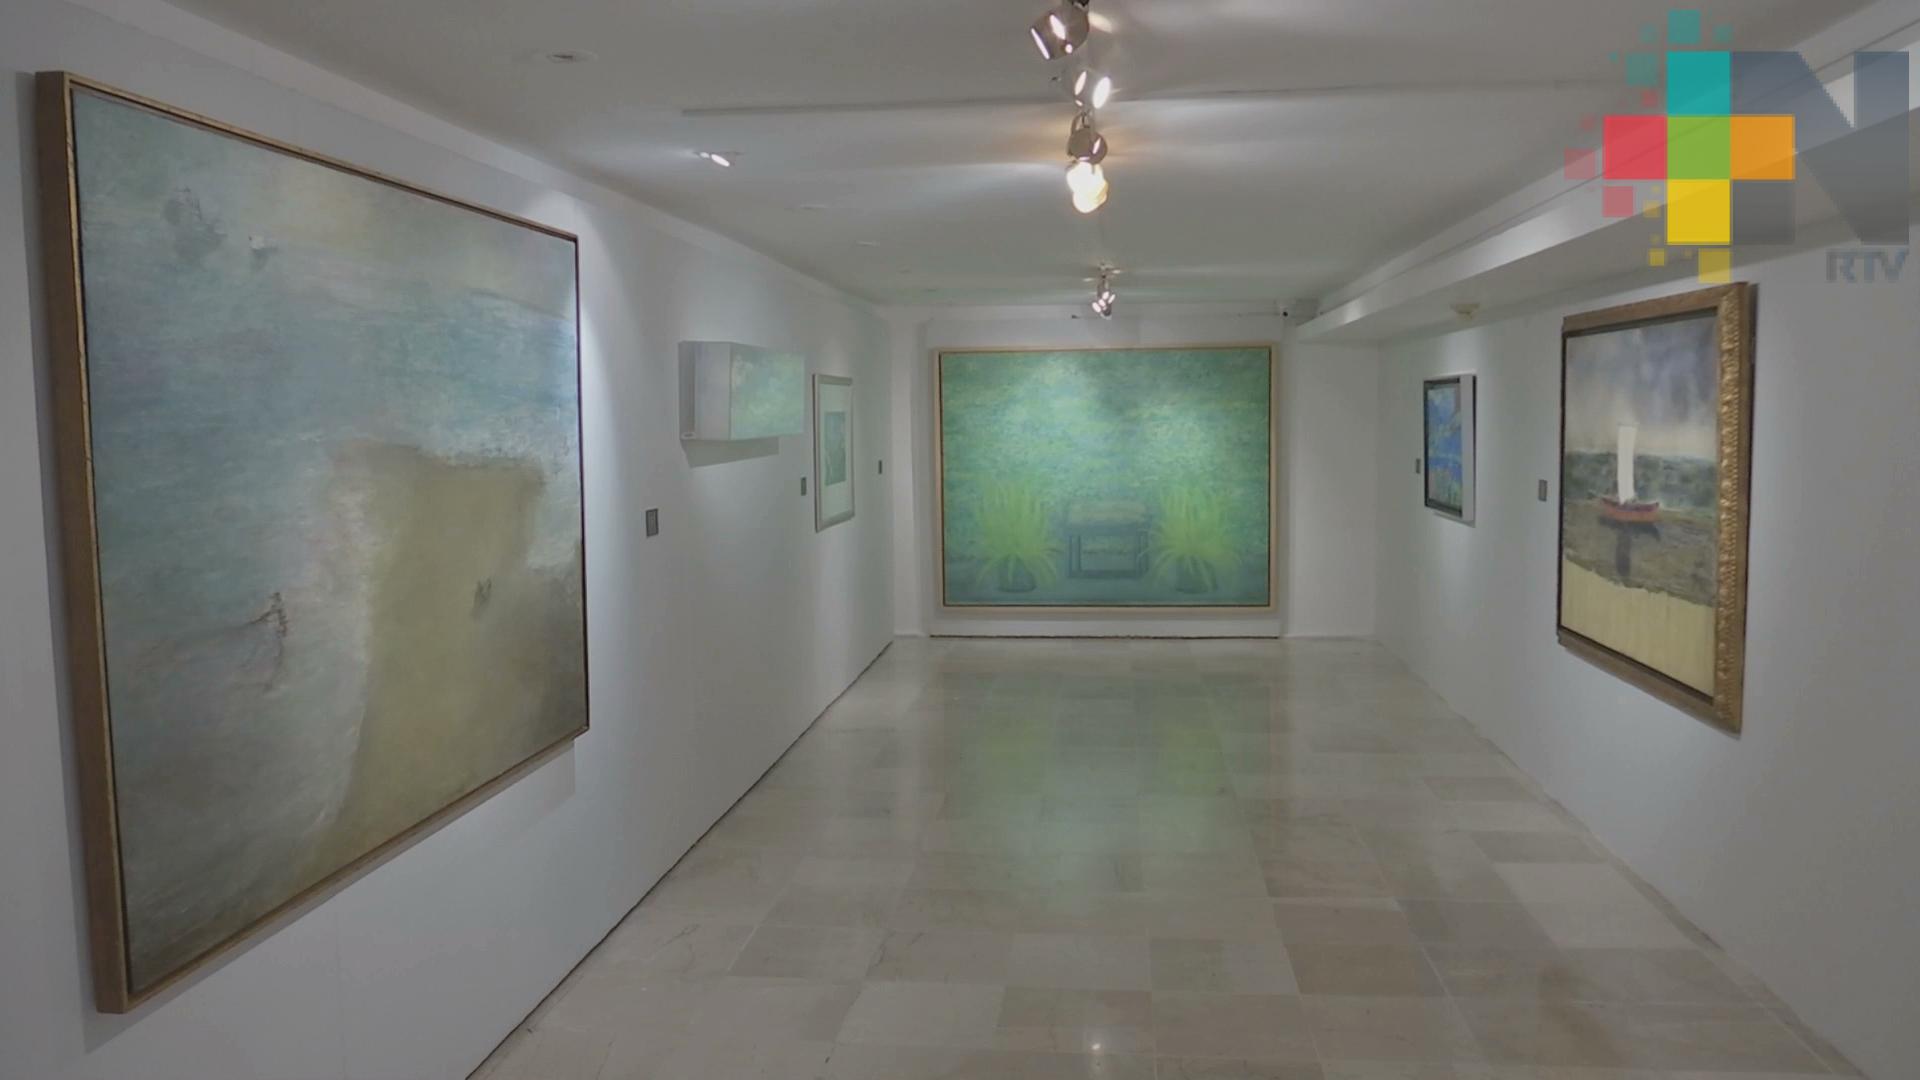 Cuatro décadas de arte en México llega a la Pinacoteca Diego Rivera